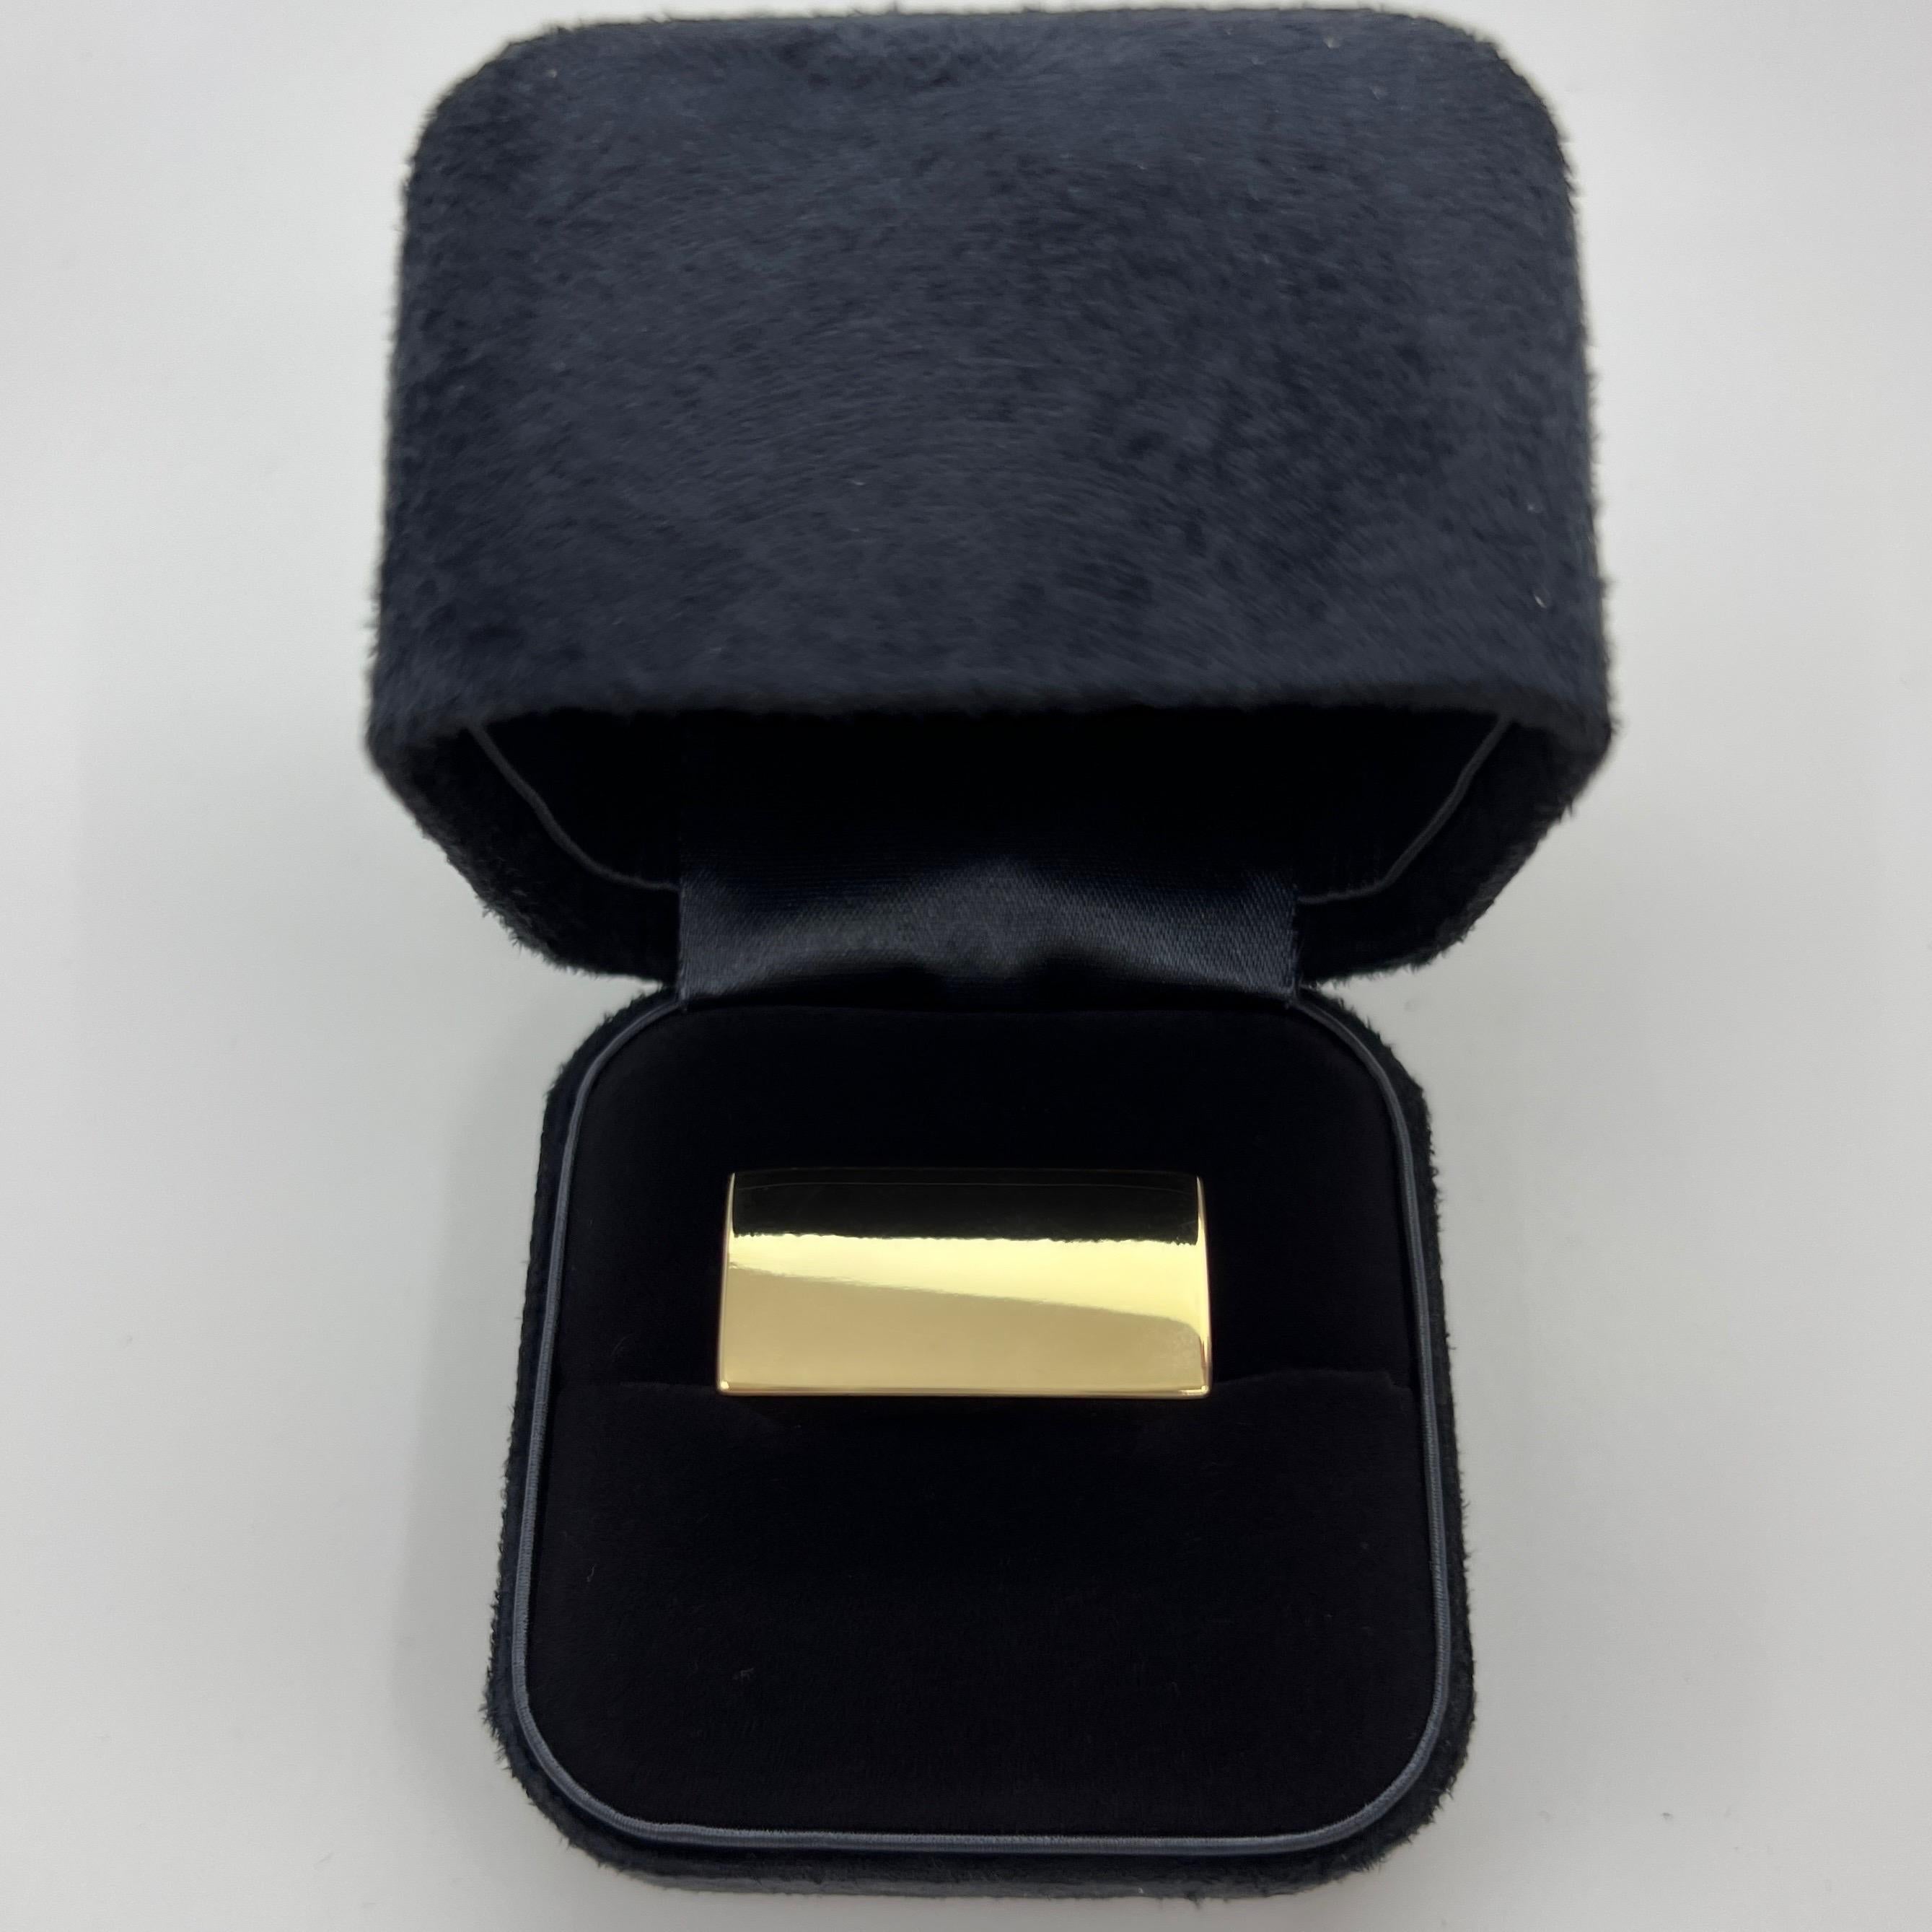 Seltener Tiffany & Co. 18k Gelbgold Bold Statement Rechteck Ring

Ein wunderschön gearbeiteter Ring aus Gelbgold mit großer rechteckiger Spitze. Dieses Stück ist ein seltener kühner Statement-Ring von Tiffany & Co. Hergestellt in Italien.

Der Ring